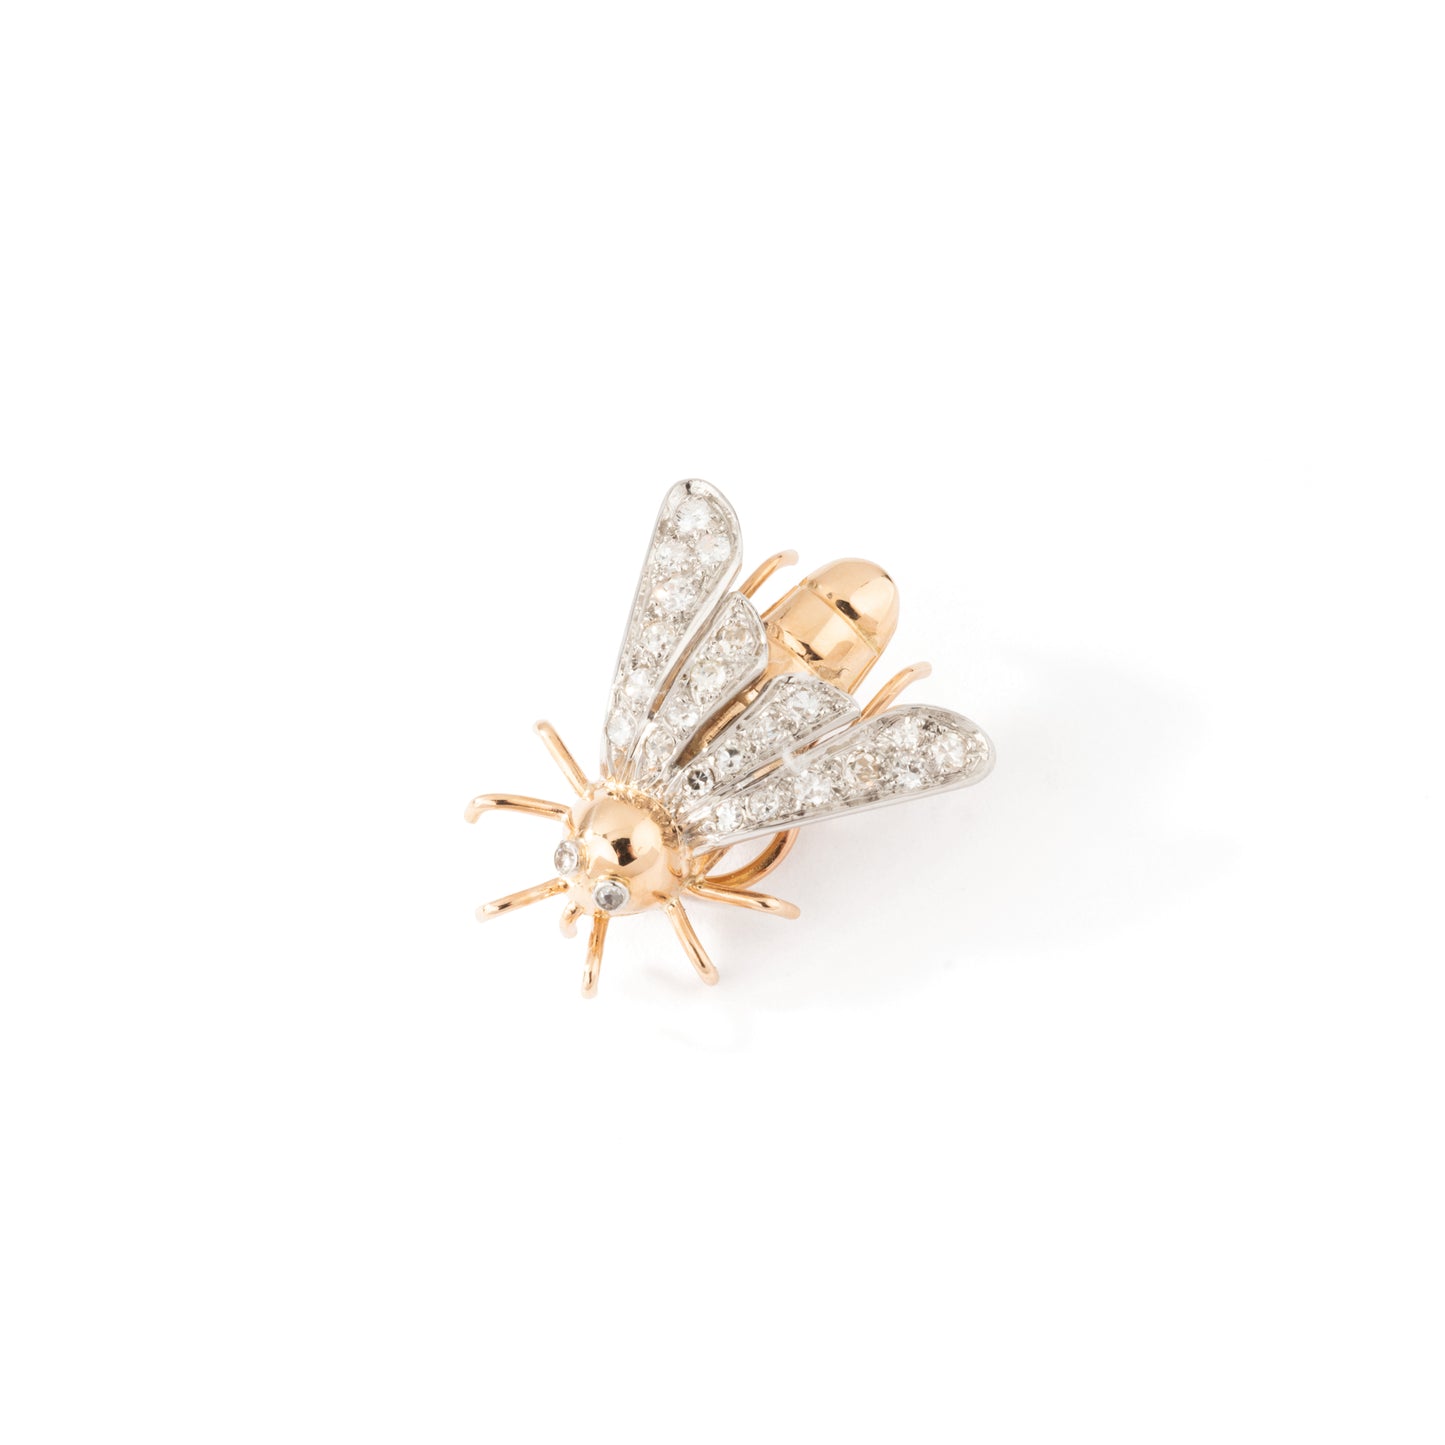 Pin's mouche en or et platine souligné de diamants. Vers 1950.